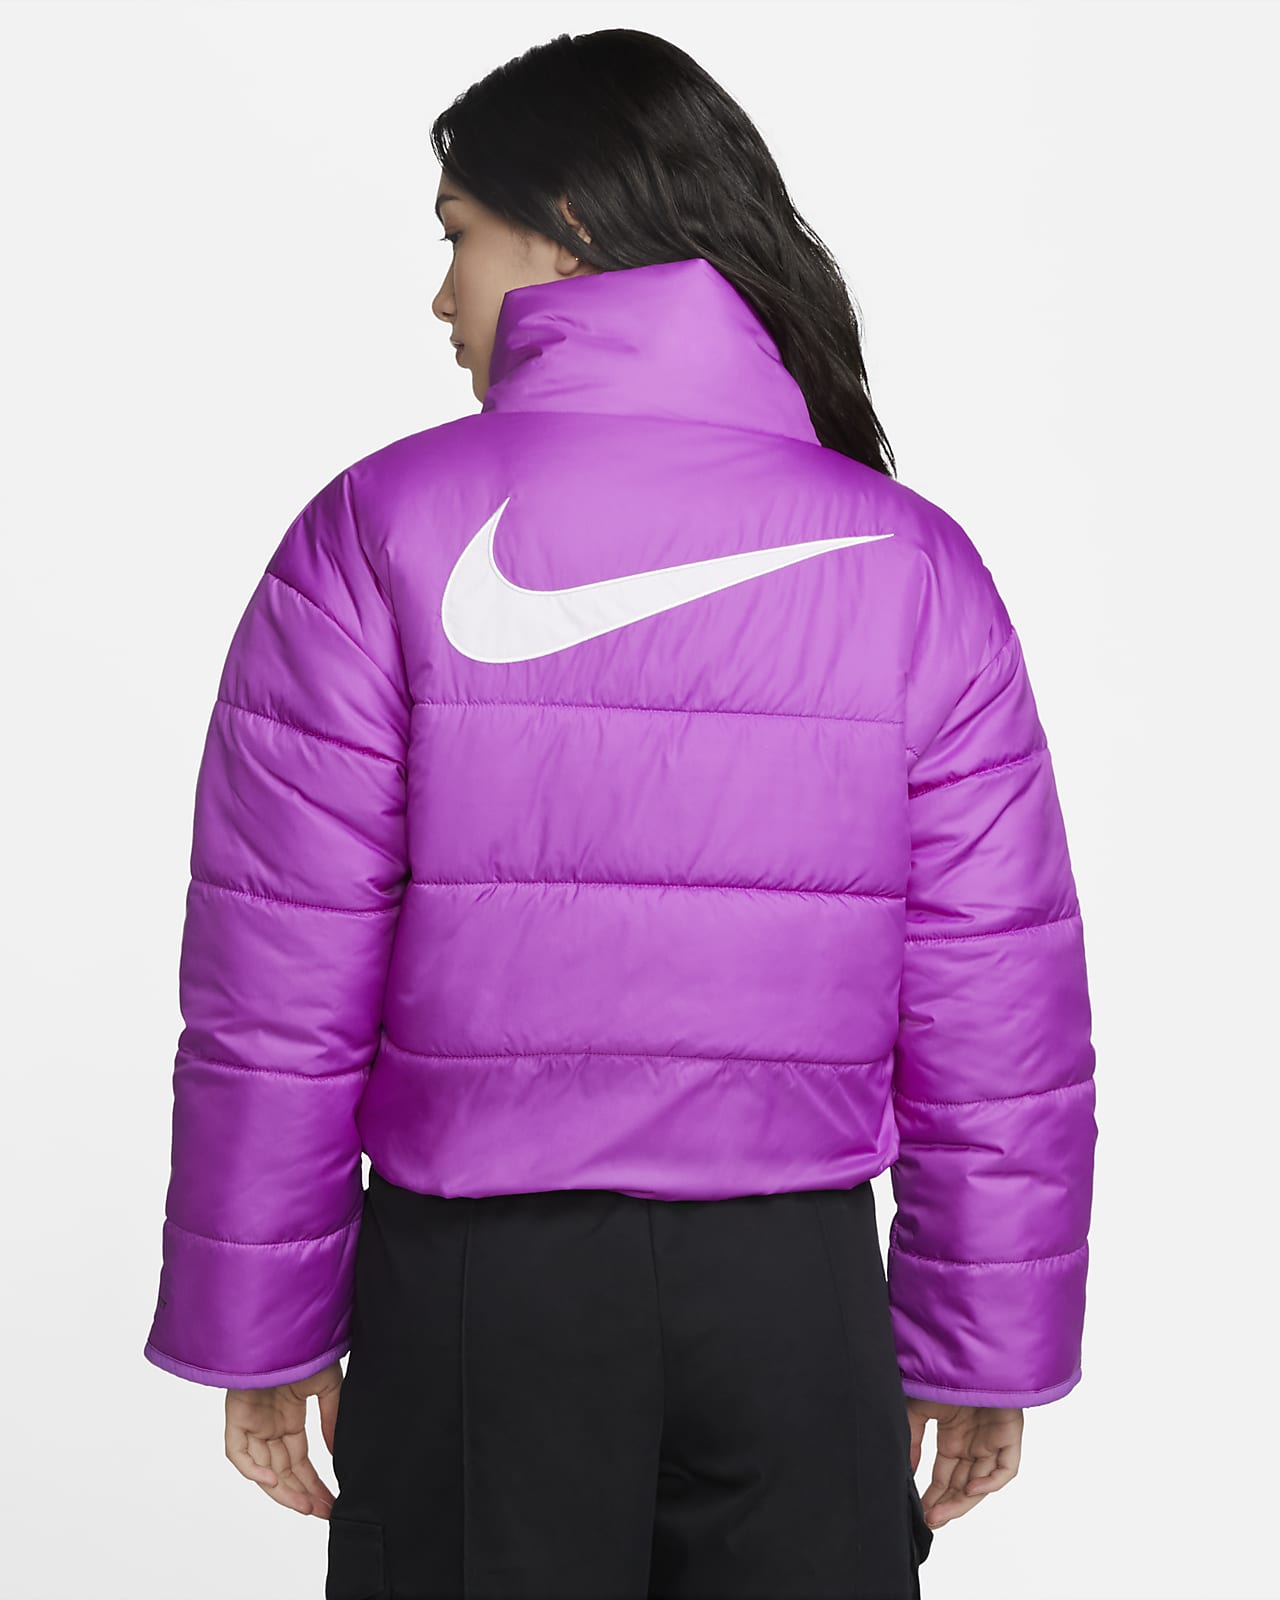 Nike Sportswear Repel Women's Reversible Jacket. JP